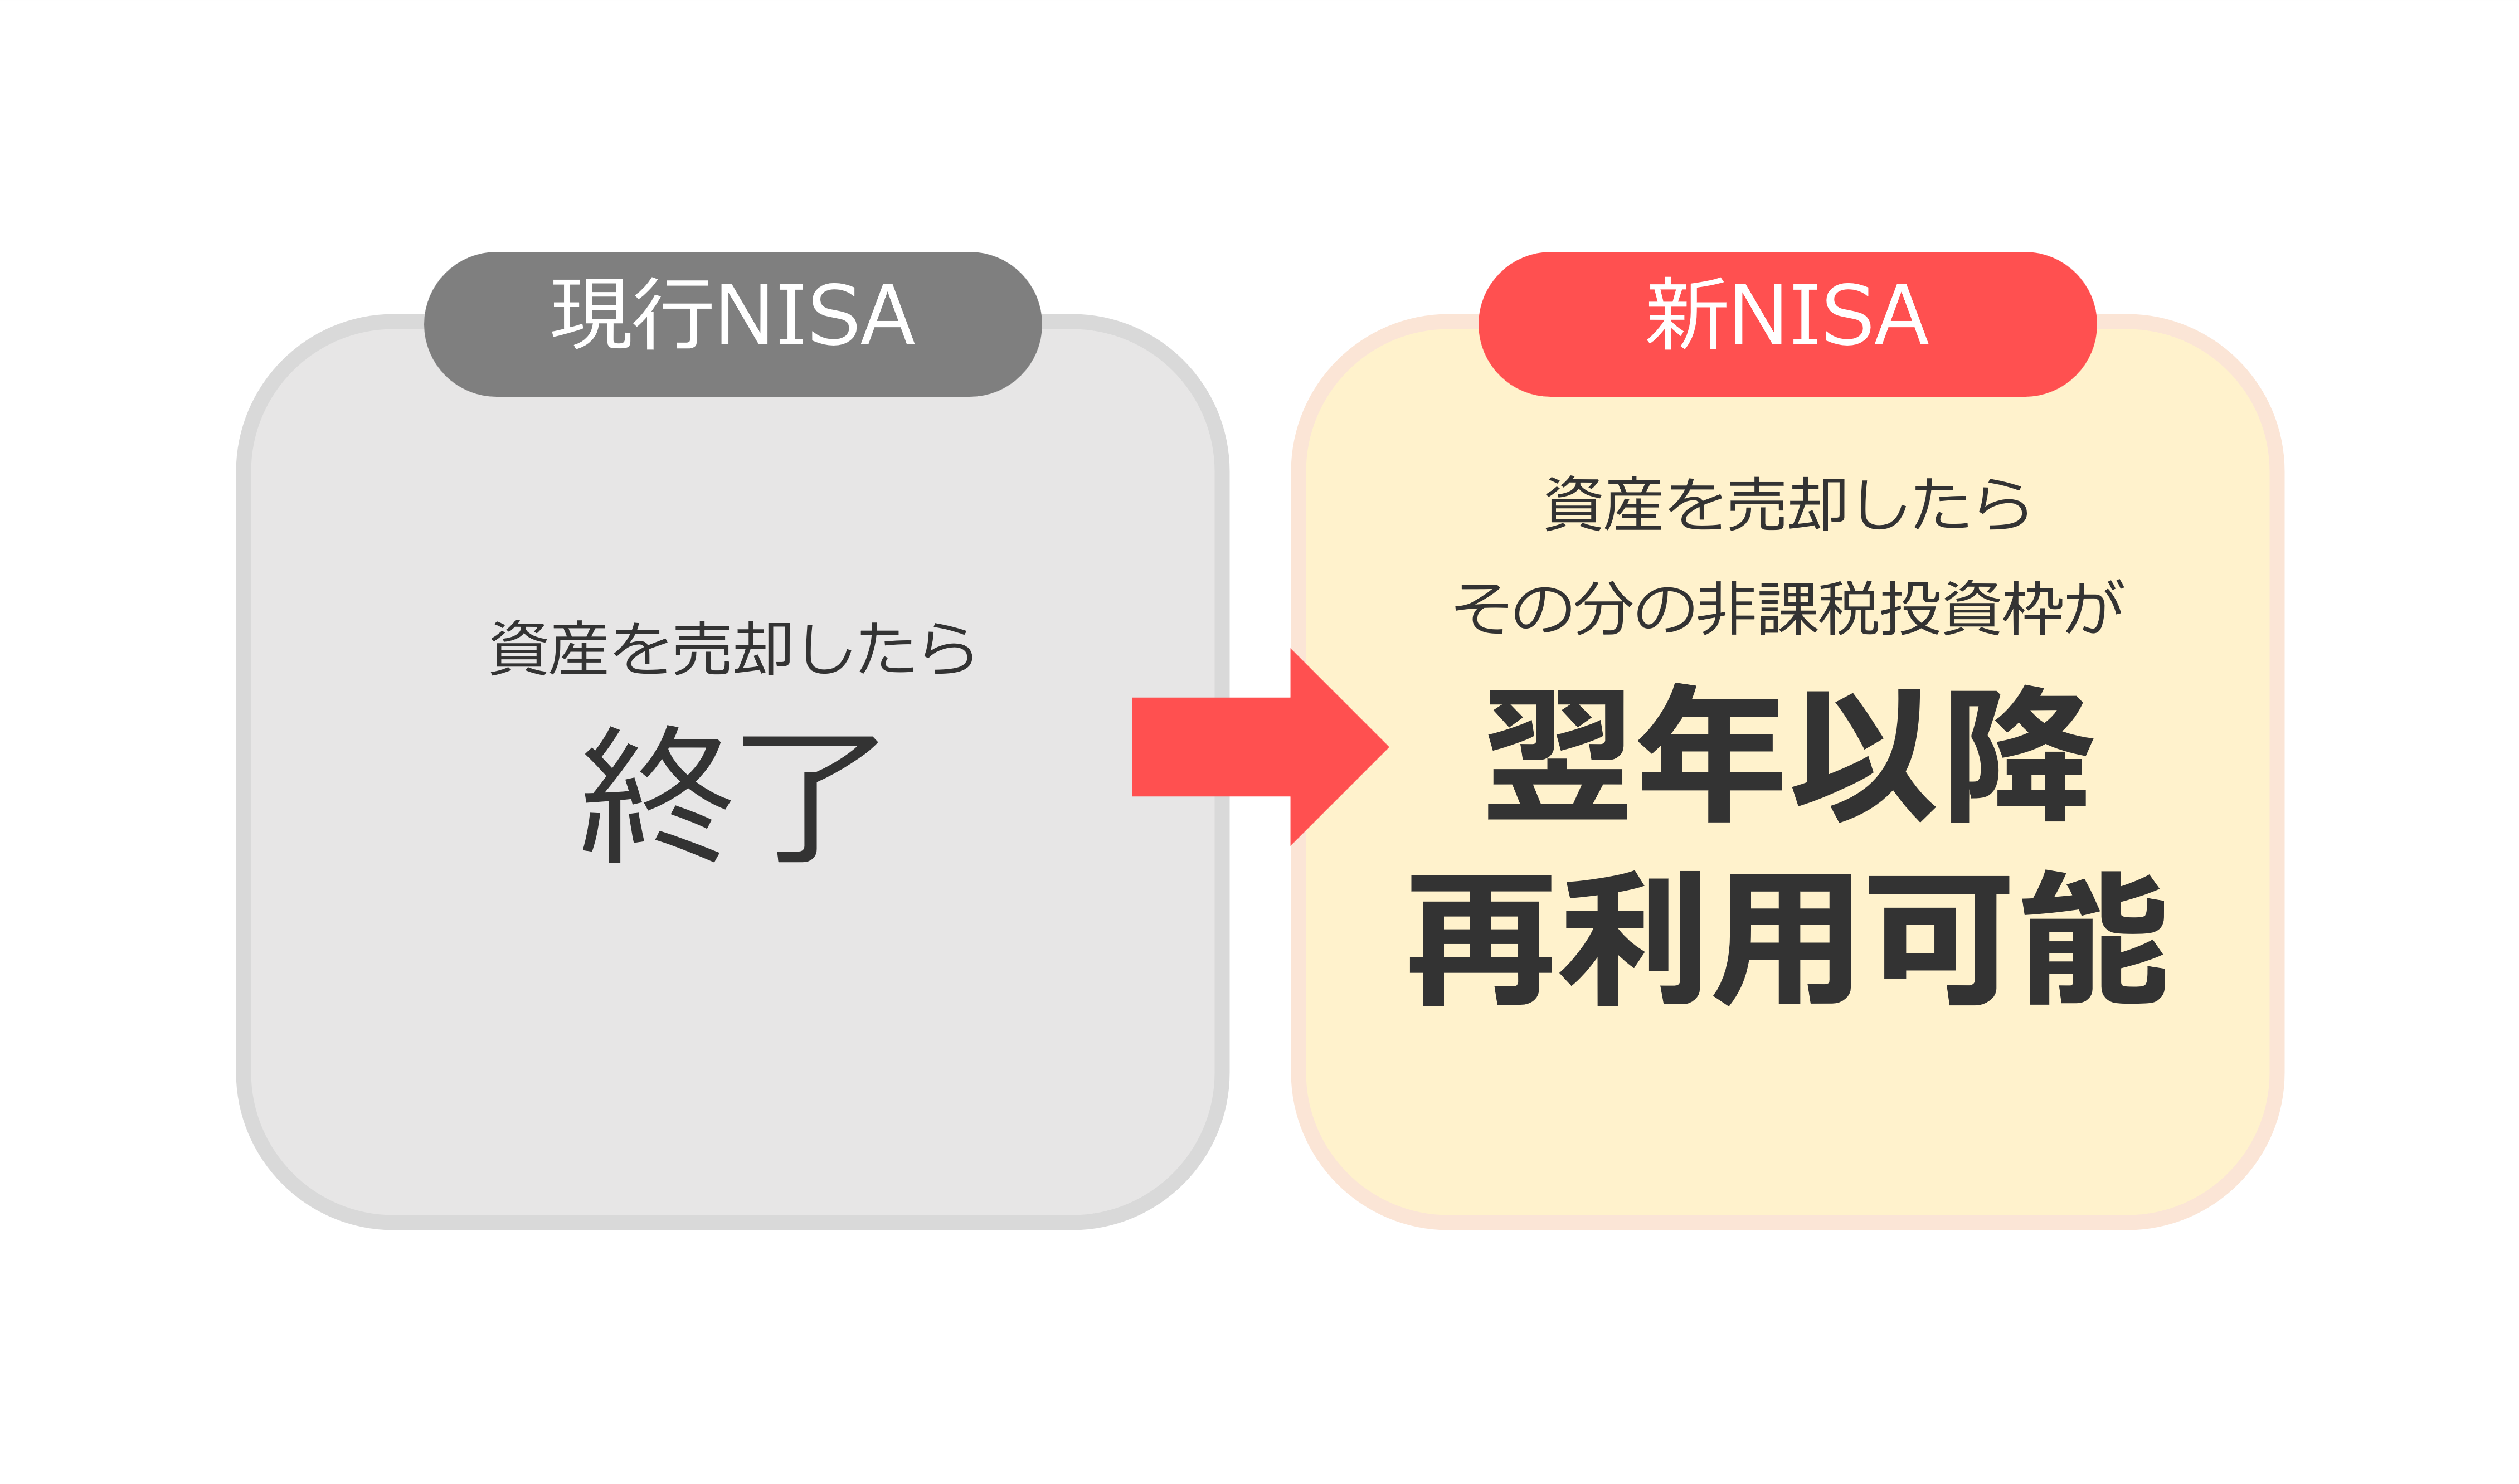 新NISAと旧NISAの違い（その３）【資産の売却で非課税投資枠が復活】